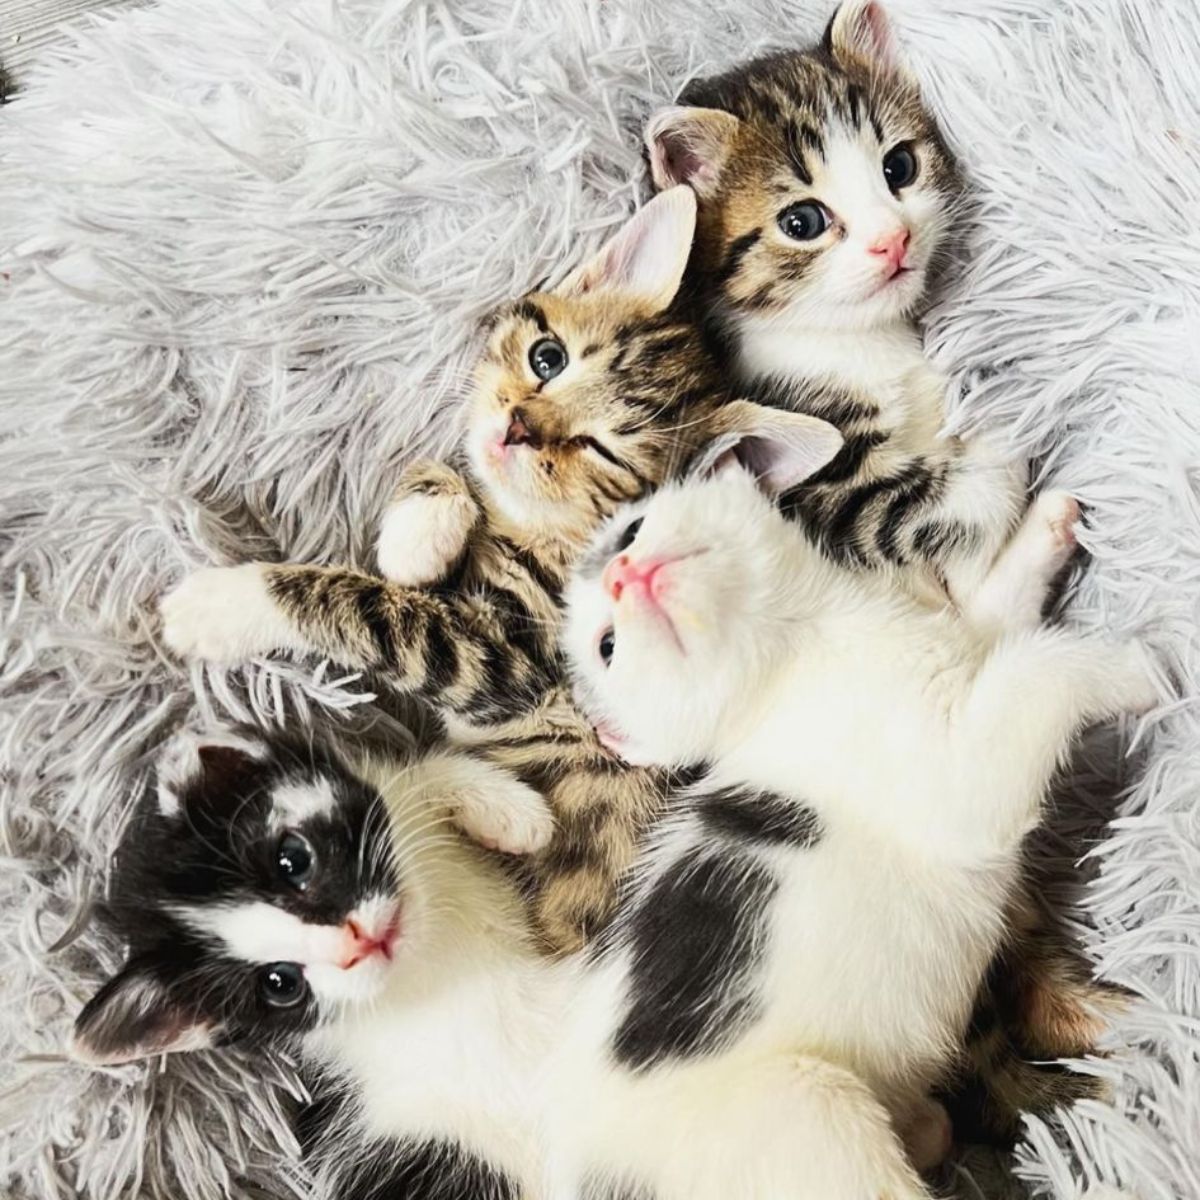 kittens snuggling